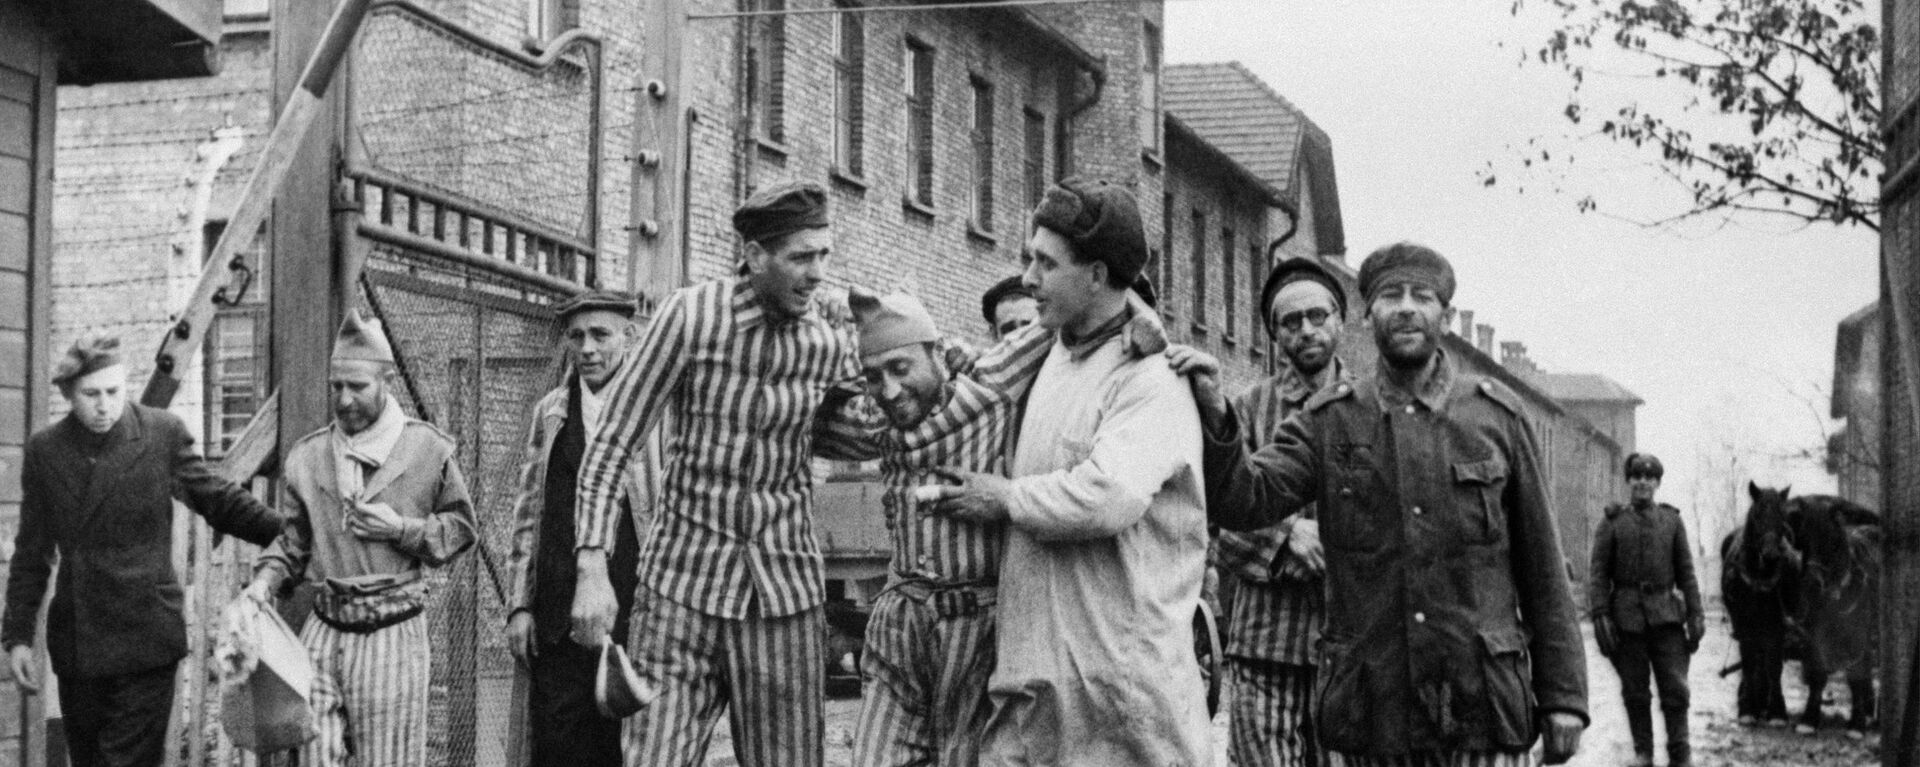 ナチスが作った収容所「アウシュビッツ＝ビルケナウ強制収容所」に収監されていた囚人を解放するソ連軍。ポーランドのアウシュビッツにて - Sputnik 日本, 1920, 27.01.2023